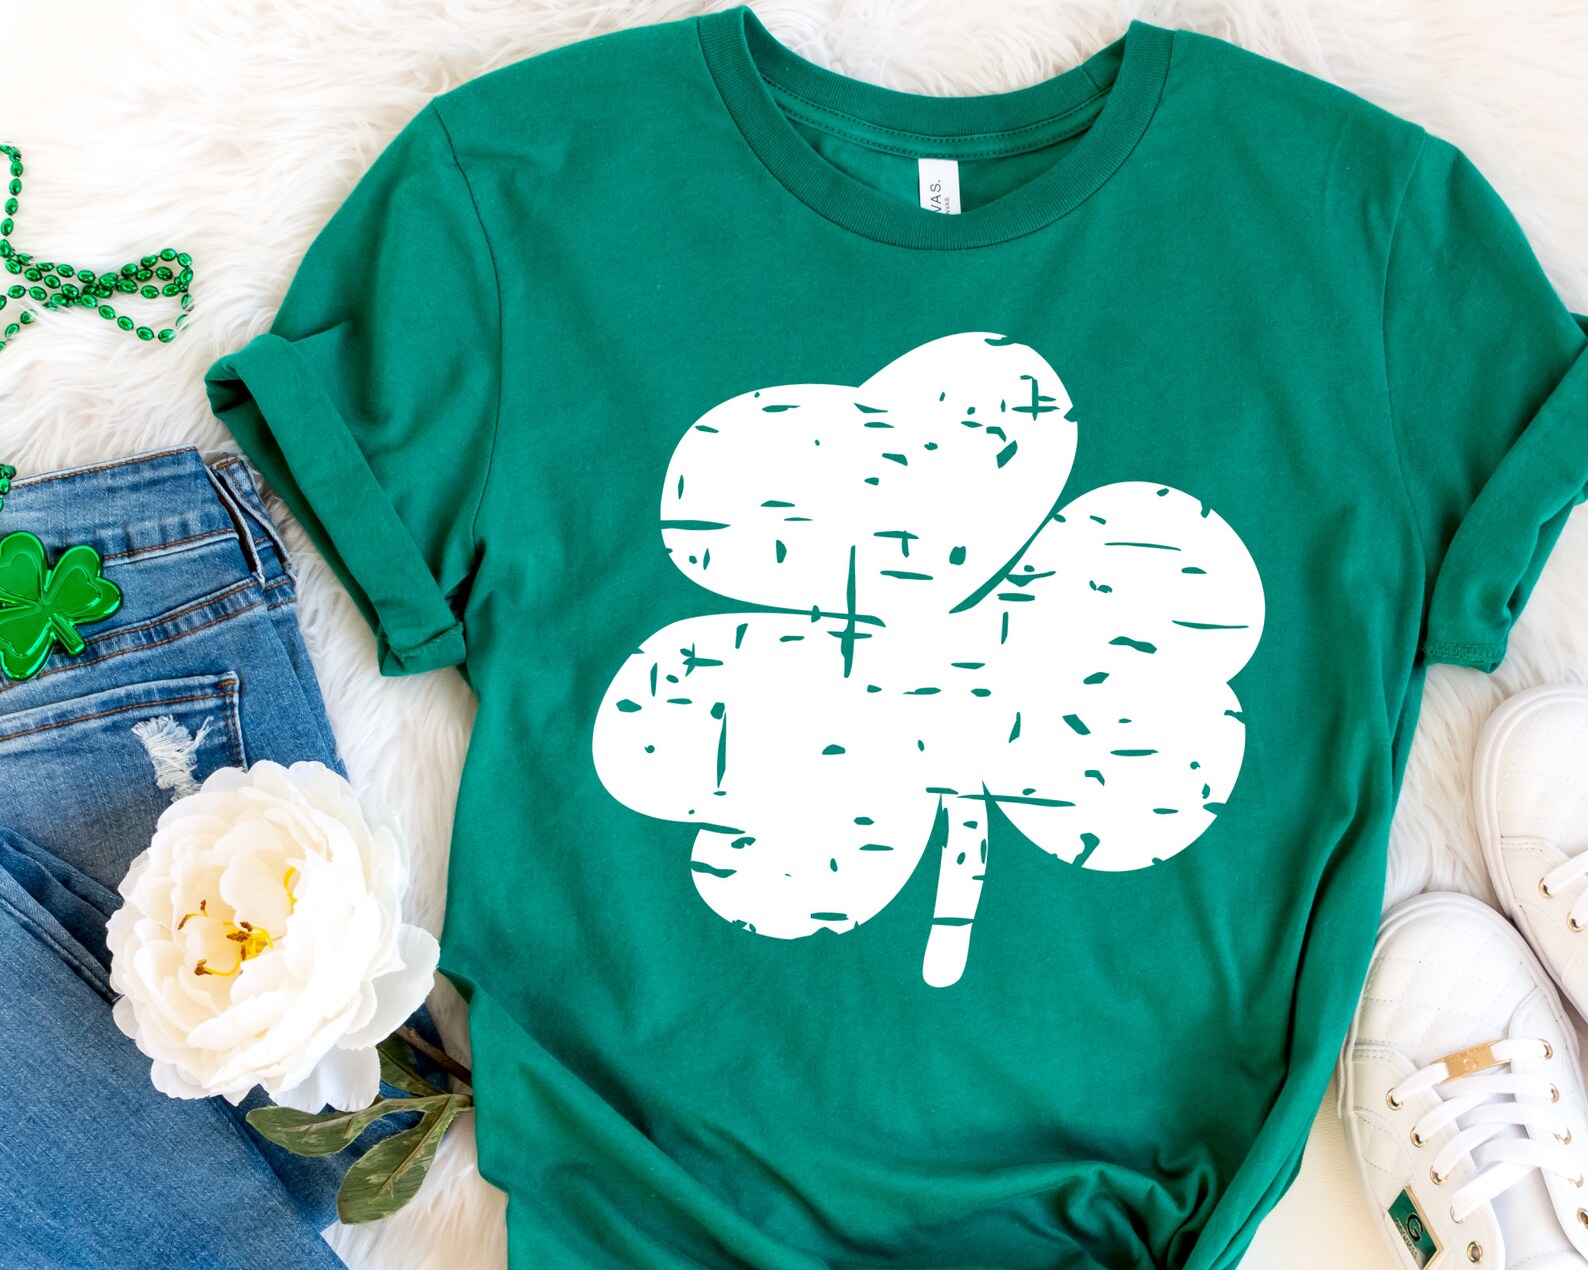 St Patricks Day SVG Bundle St Patricks Shirt SVG for Cricut - Etsy